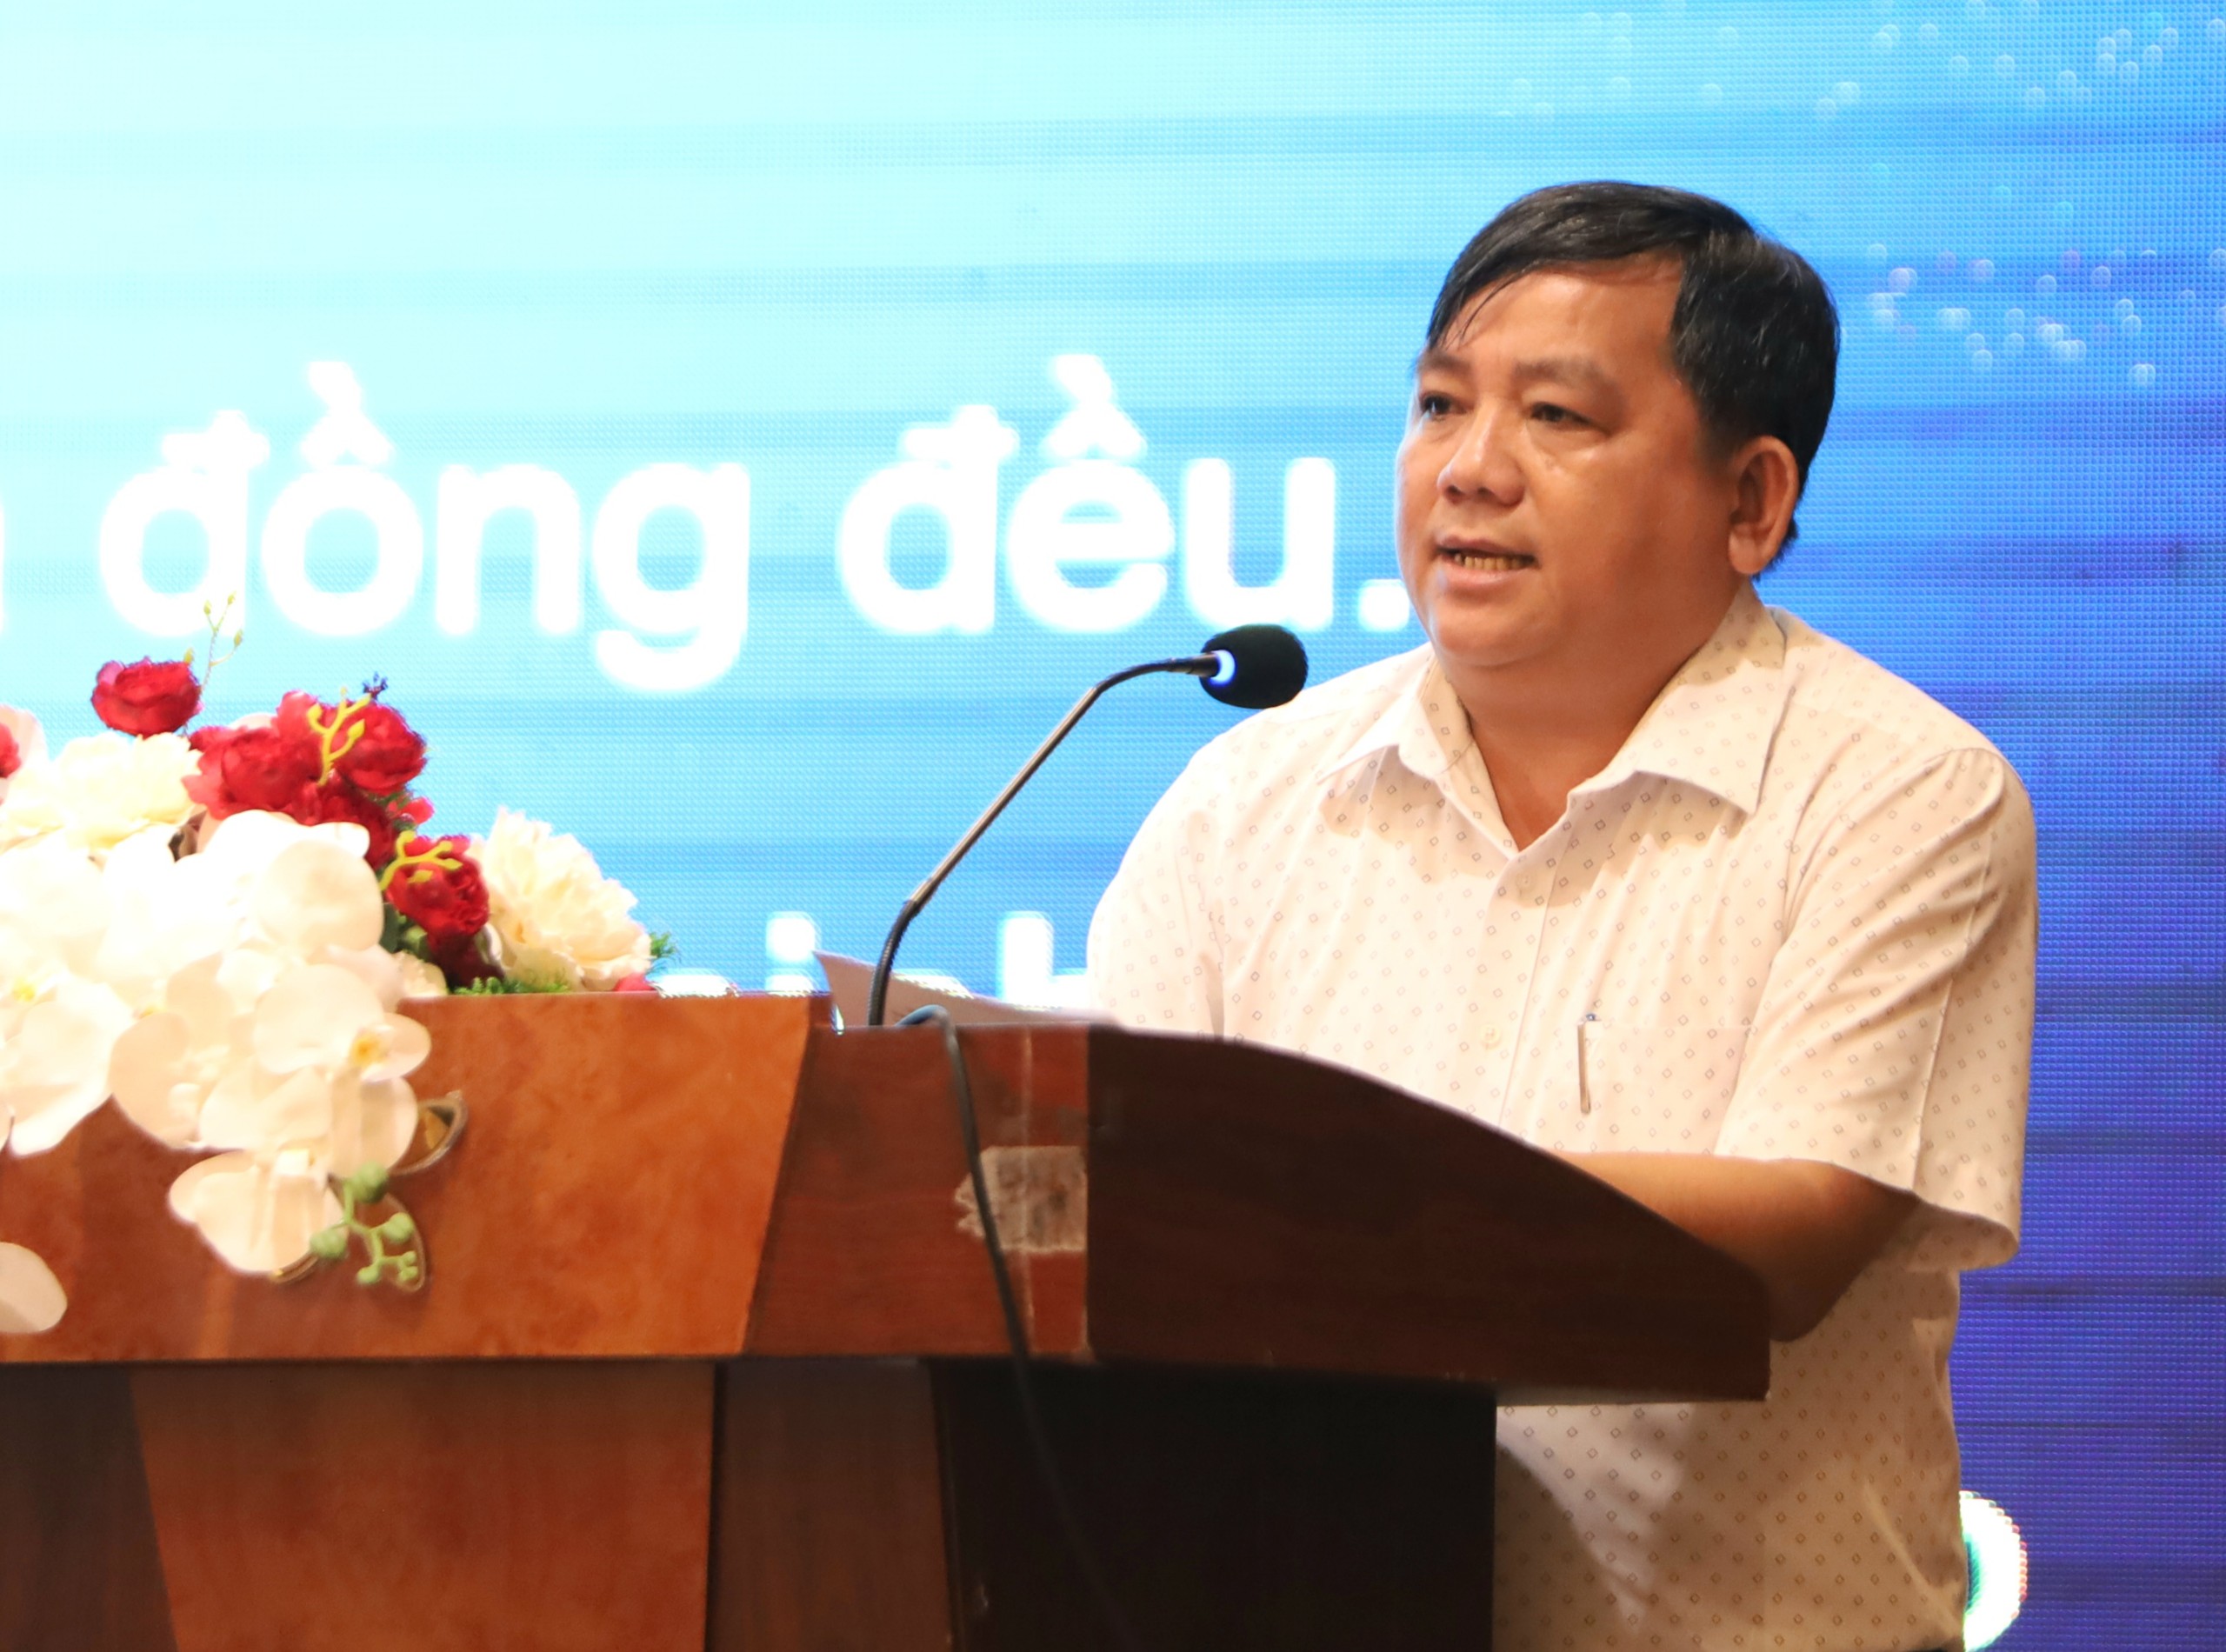 Ông Huỳnh Thanh Lộc - Trưởng phòng Giáo dục Trung học thuộc Sở GD&ĐT TP. Cần Thơ báo cáo thực trạng và vấn đề đặt ra đối với việc chuyển đổi số trong ngành Giáo dục và Đào tạo.